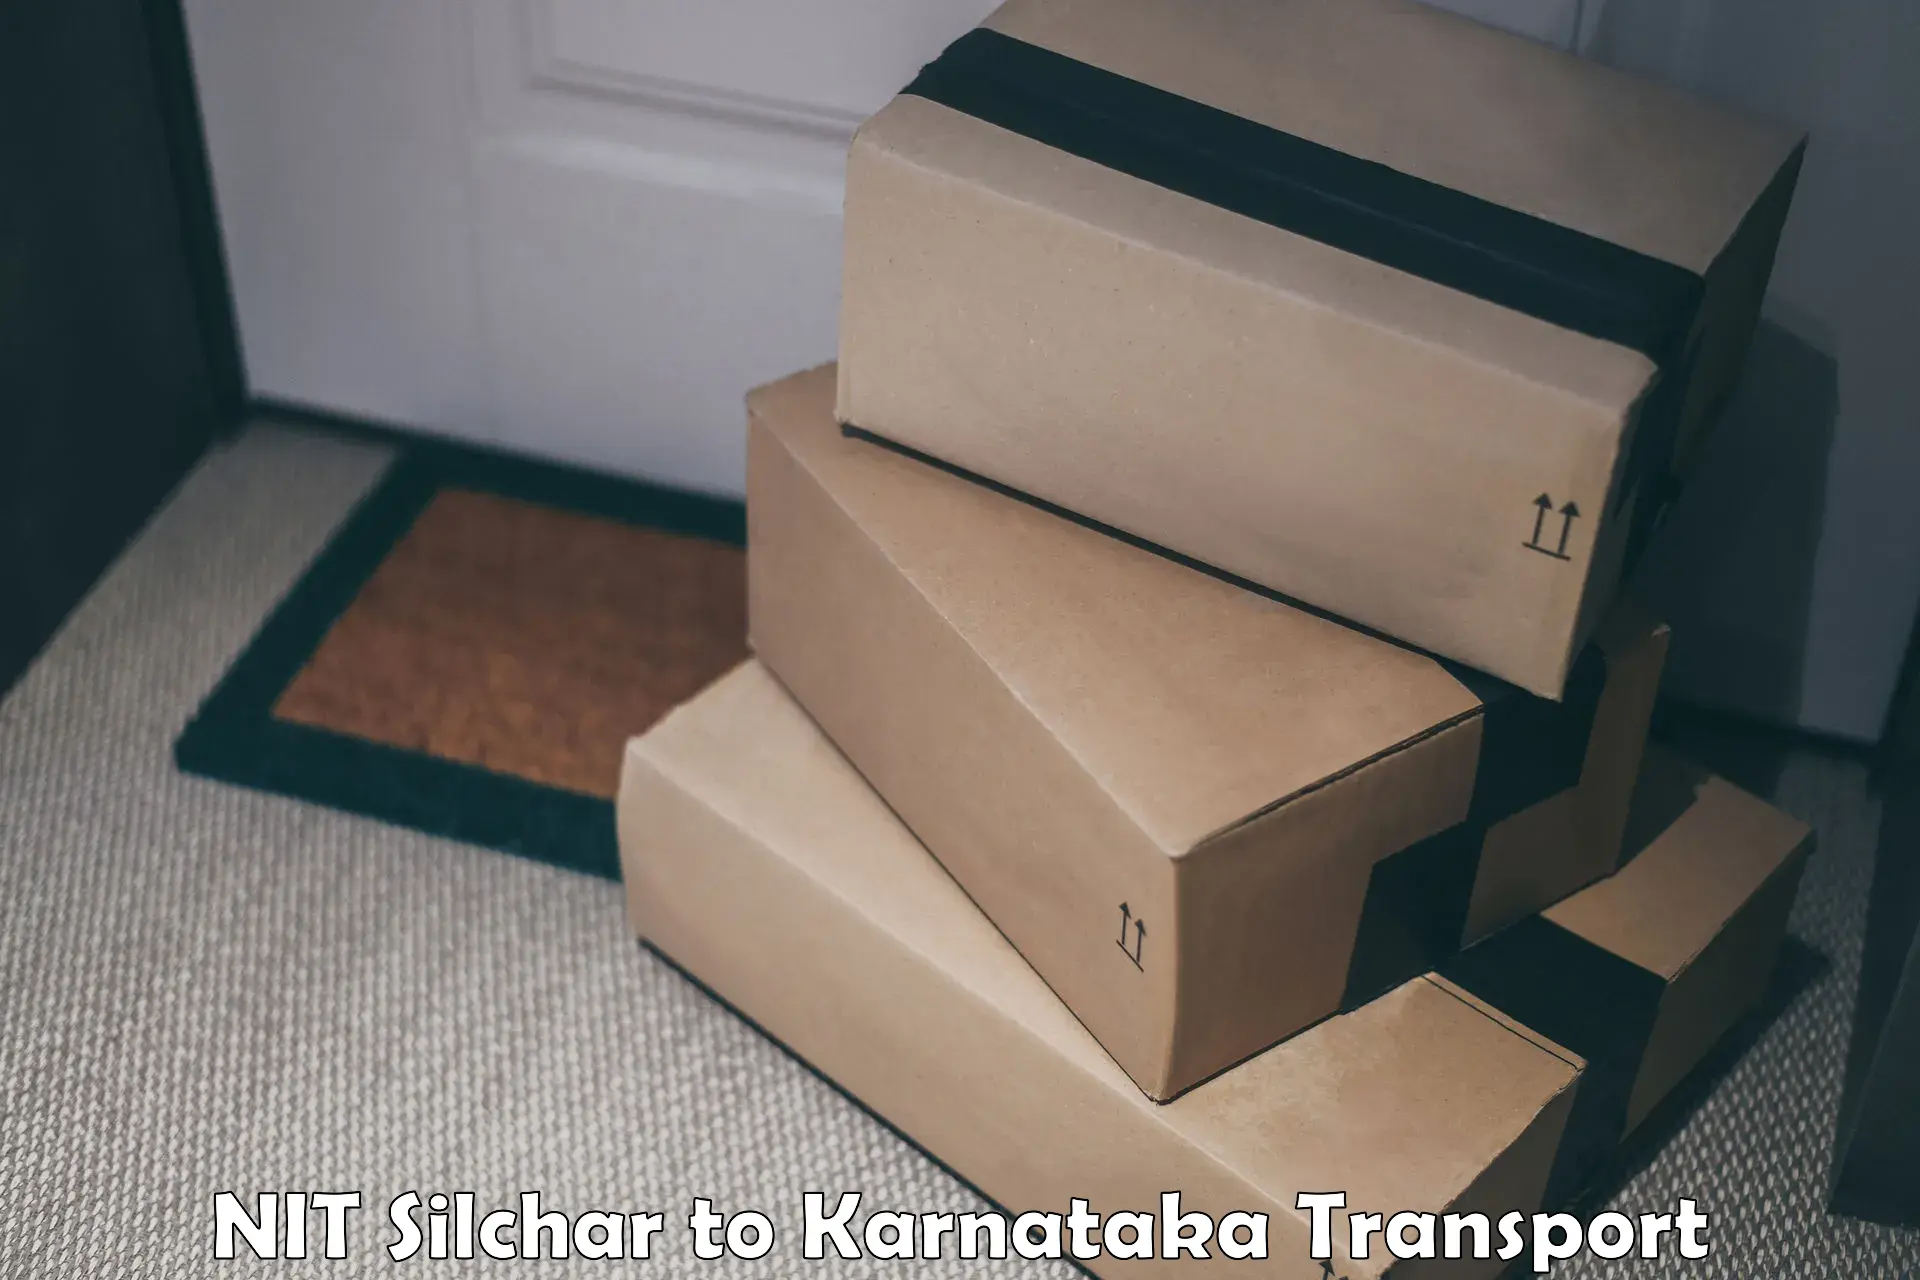 Bike shipping service NIT Silchar to Karnataka